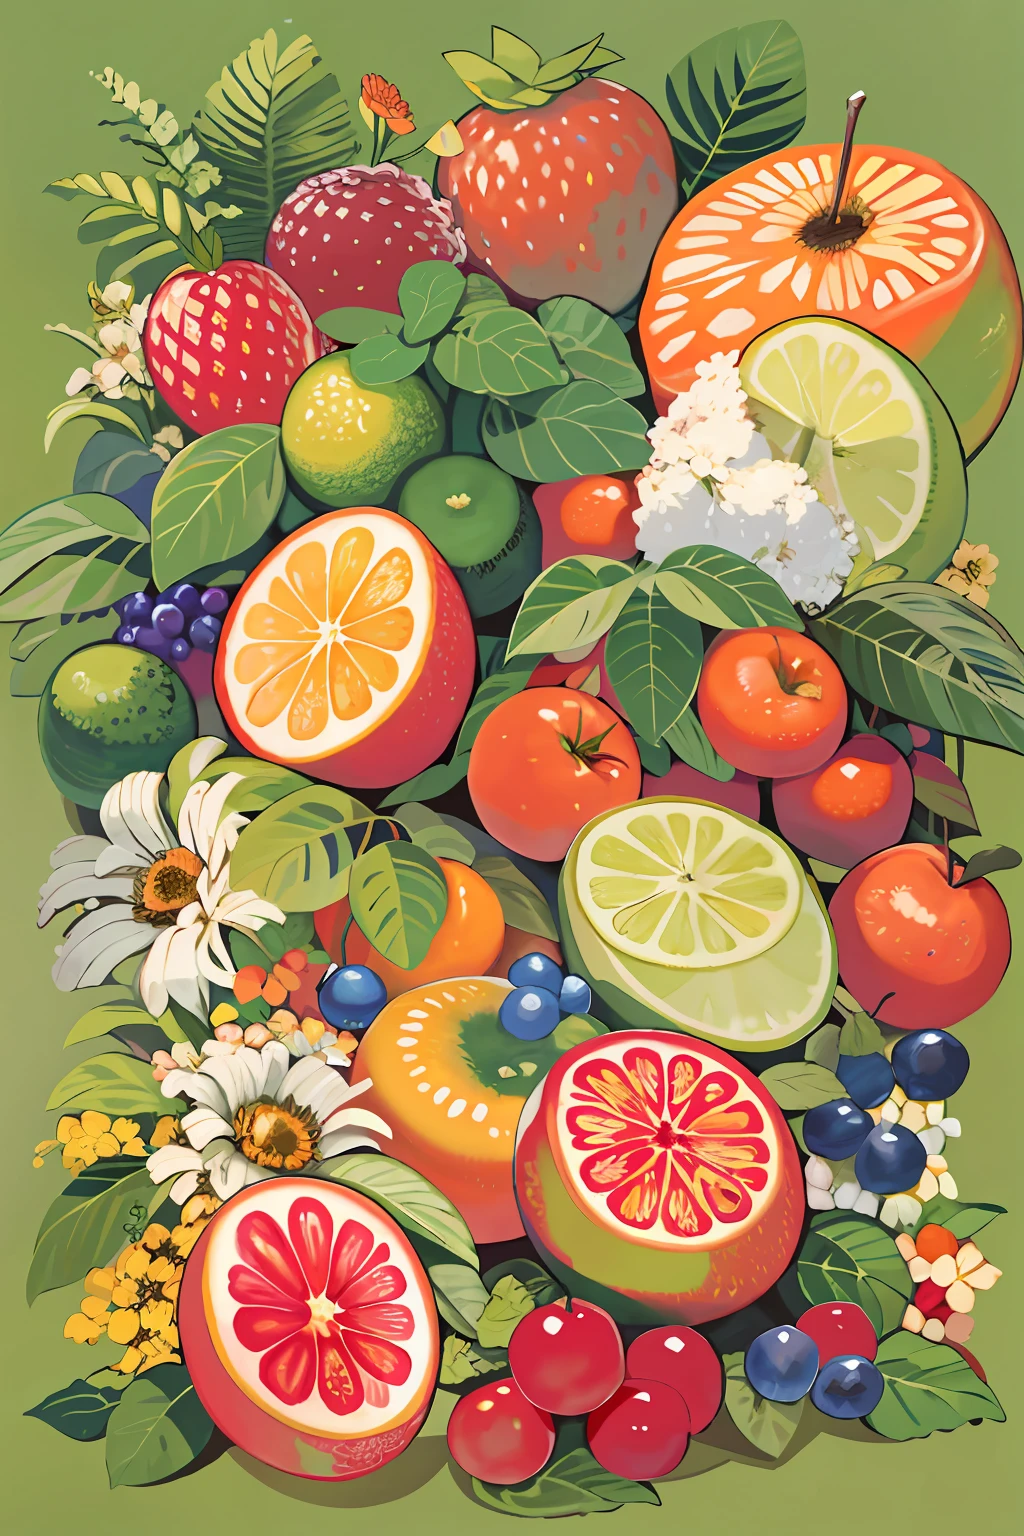 テーブルの上にはたくさんの果物の絵があります, 果物と花, フルカラーイラスト, 著者：ジョン・ウェルナショット, made of 果物と花, 花と果物でできた, 果物, フルカラーW 1024, フルカラーデジタルイラスト, 著者：リチャード・メイヒュー, 公式アート, ガッシュの詳細な絵画で, クールなイラスト